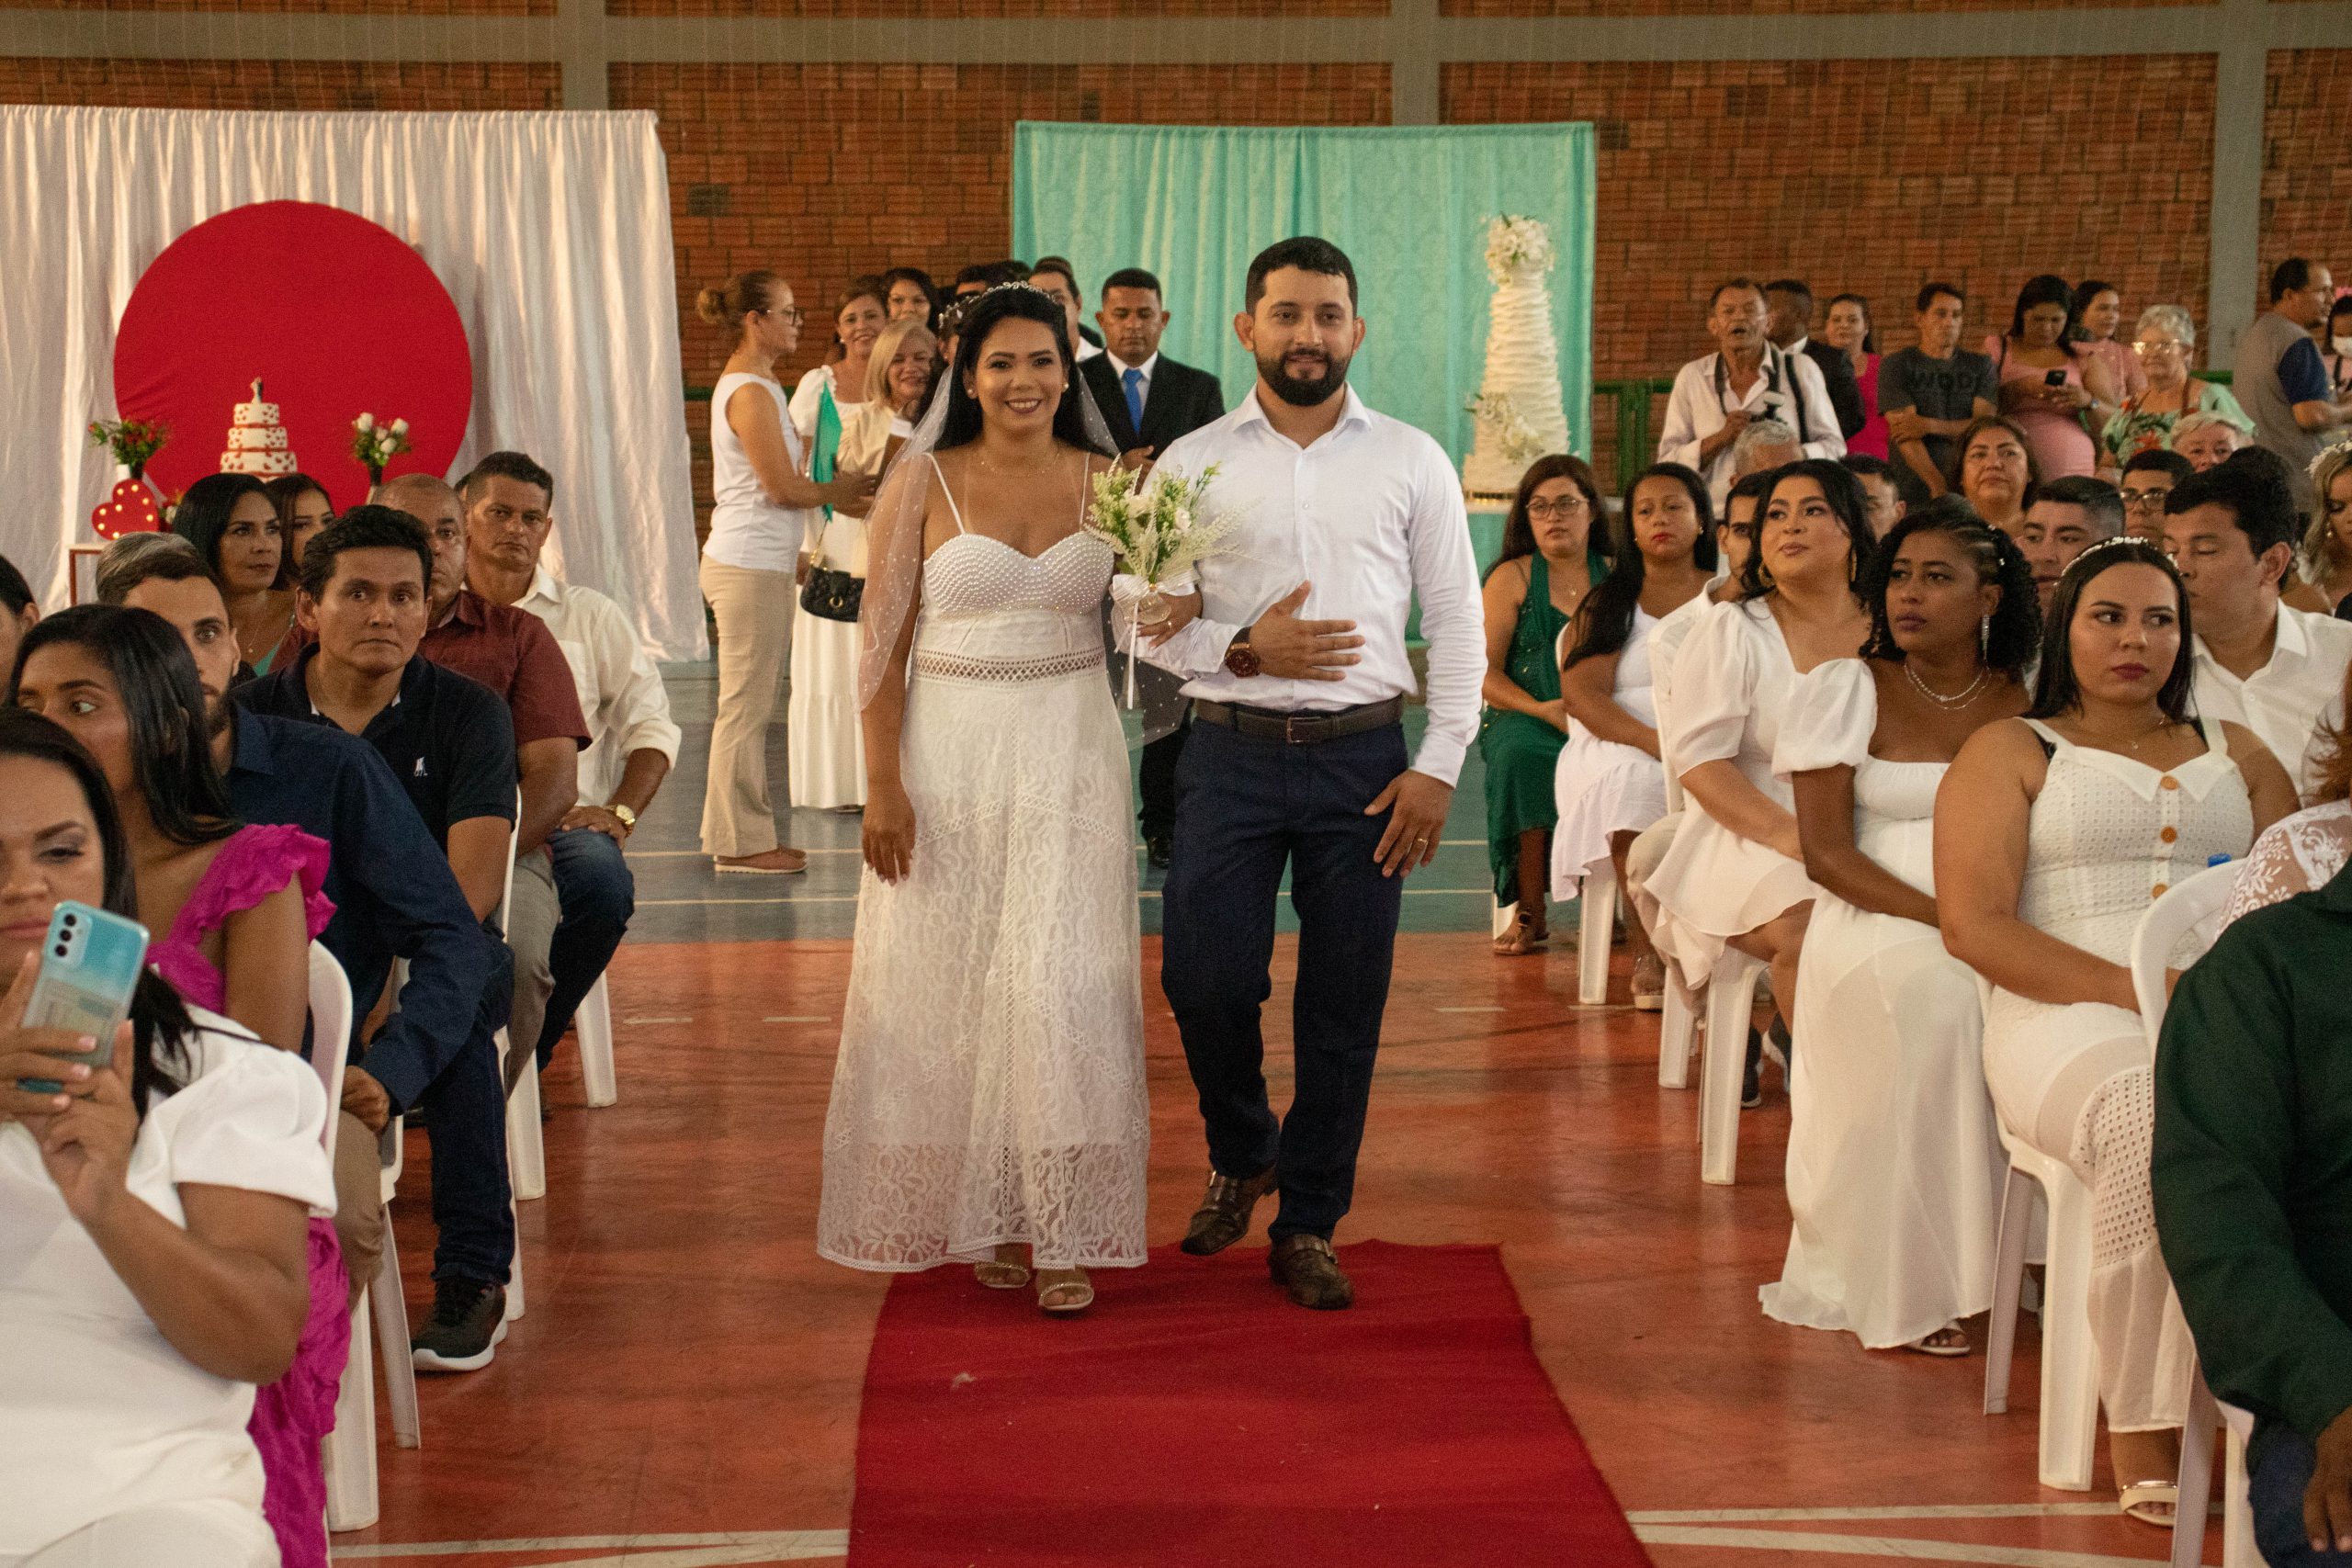 Os noivos entram sorrindo num tapete vermelho enquanto os outros noivos sentados assistem a cerimônia